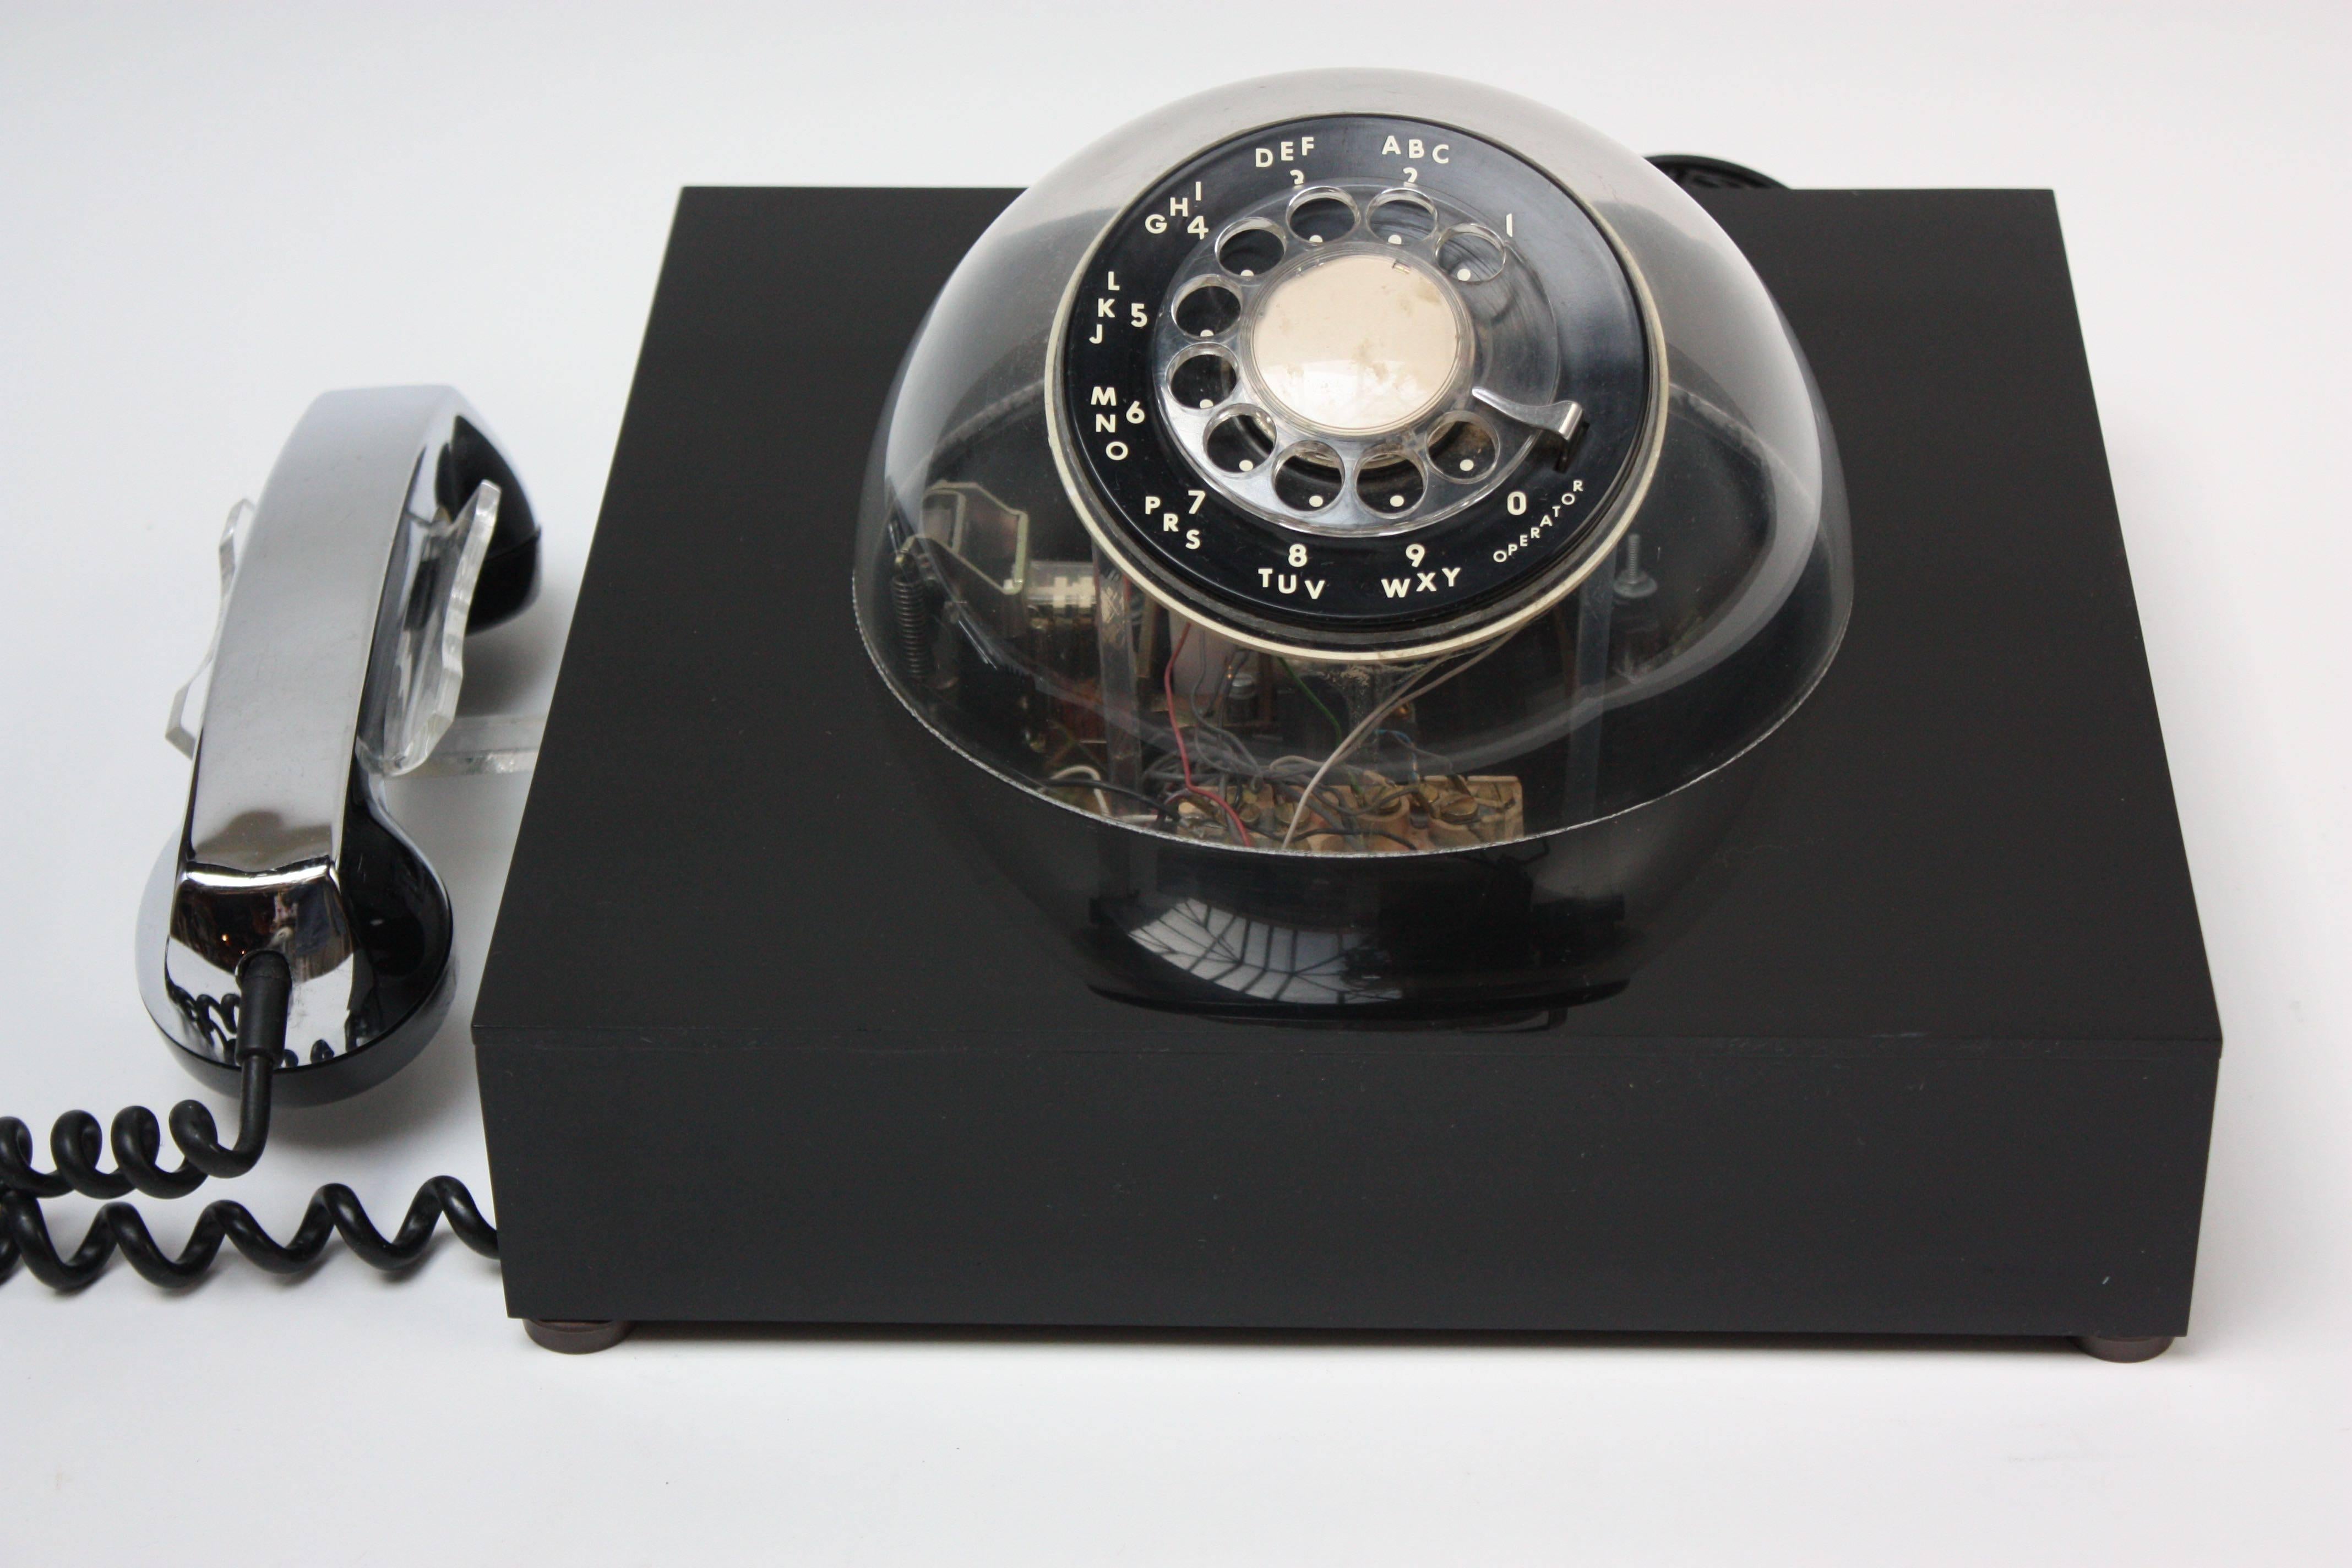 Dieses futuristische Teledome-Telefon (Modell #3005) wurde 1972 von Teleconcepts patentiert und hergestellt und enthielt Einbauten der Firma Northern Telecom Inc. Verchromter Handapparat mit schwarzem Acrylgehäuse und durchsichtiger